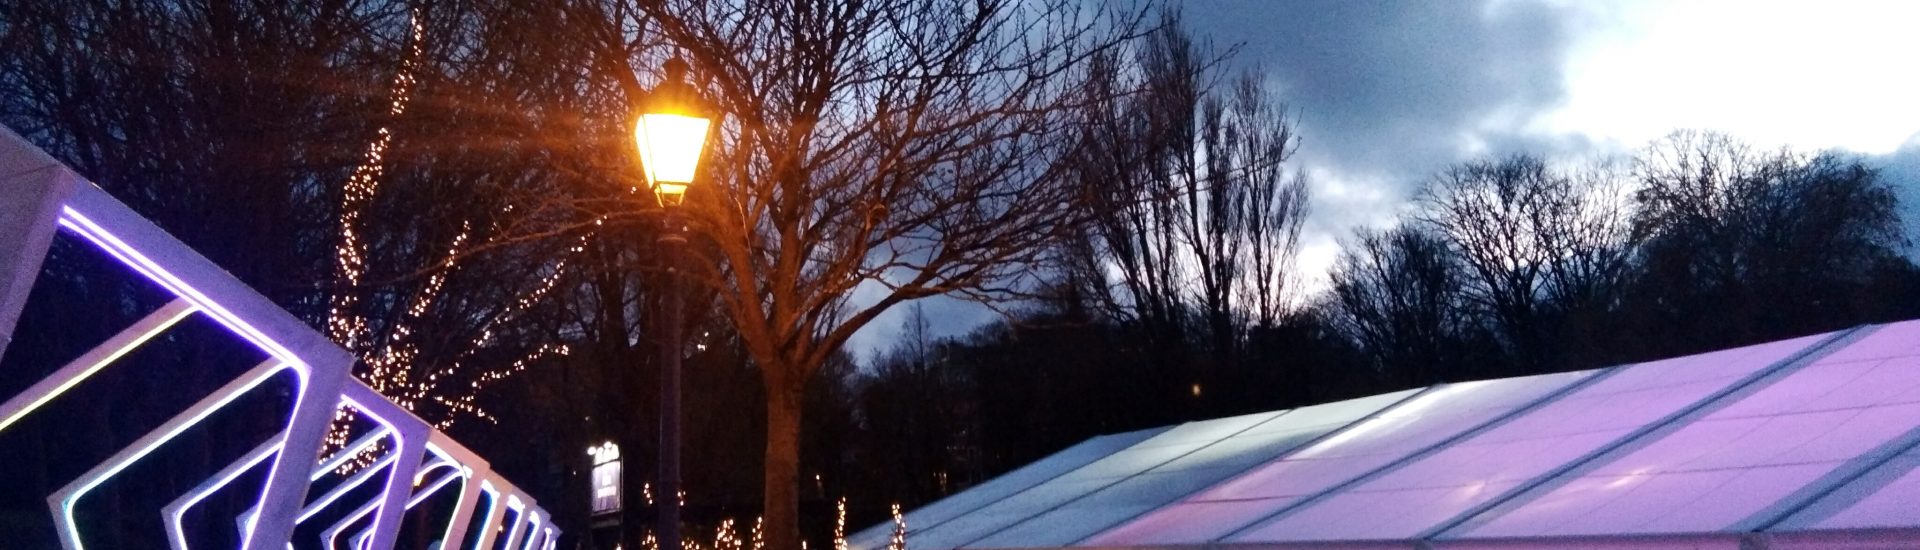 Ambiance bonne année 2024- Patinoire et illuminations de Noel à Gand (Belgique)